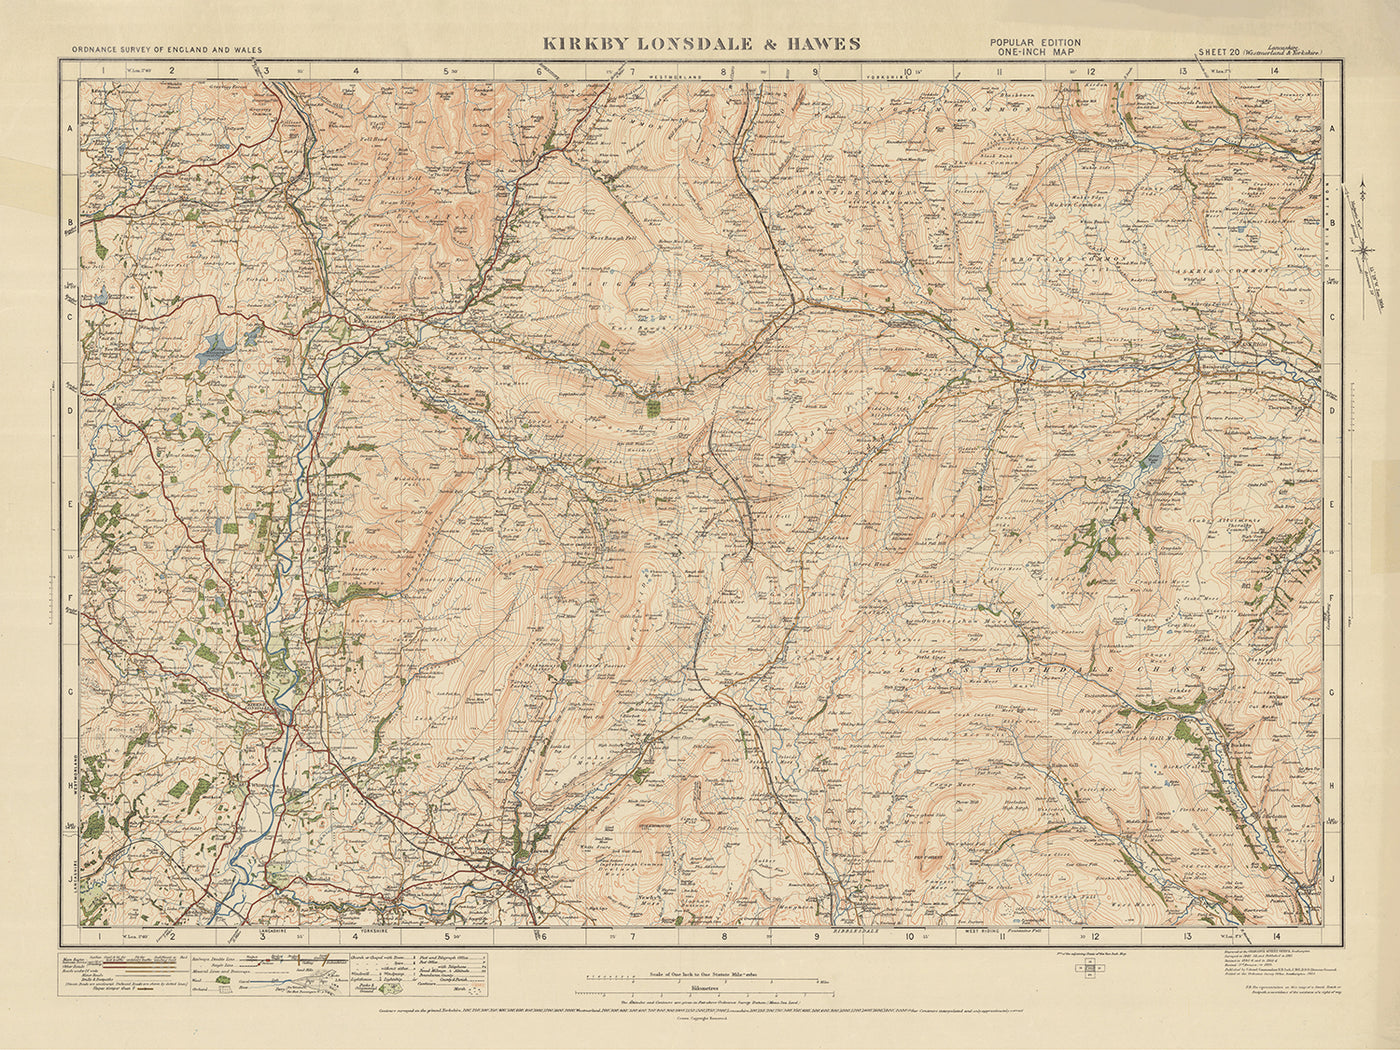 Old Ordnance Survey Map, Sheet 20 - Kirkby Lonsdale & Hawes, 1925: Ingleton, Sedbergh, Askrigg, Yorkshire Dales National Park